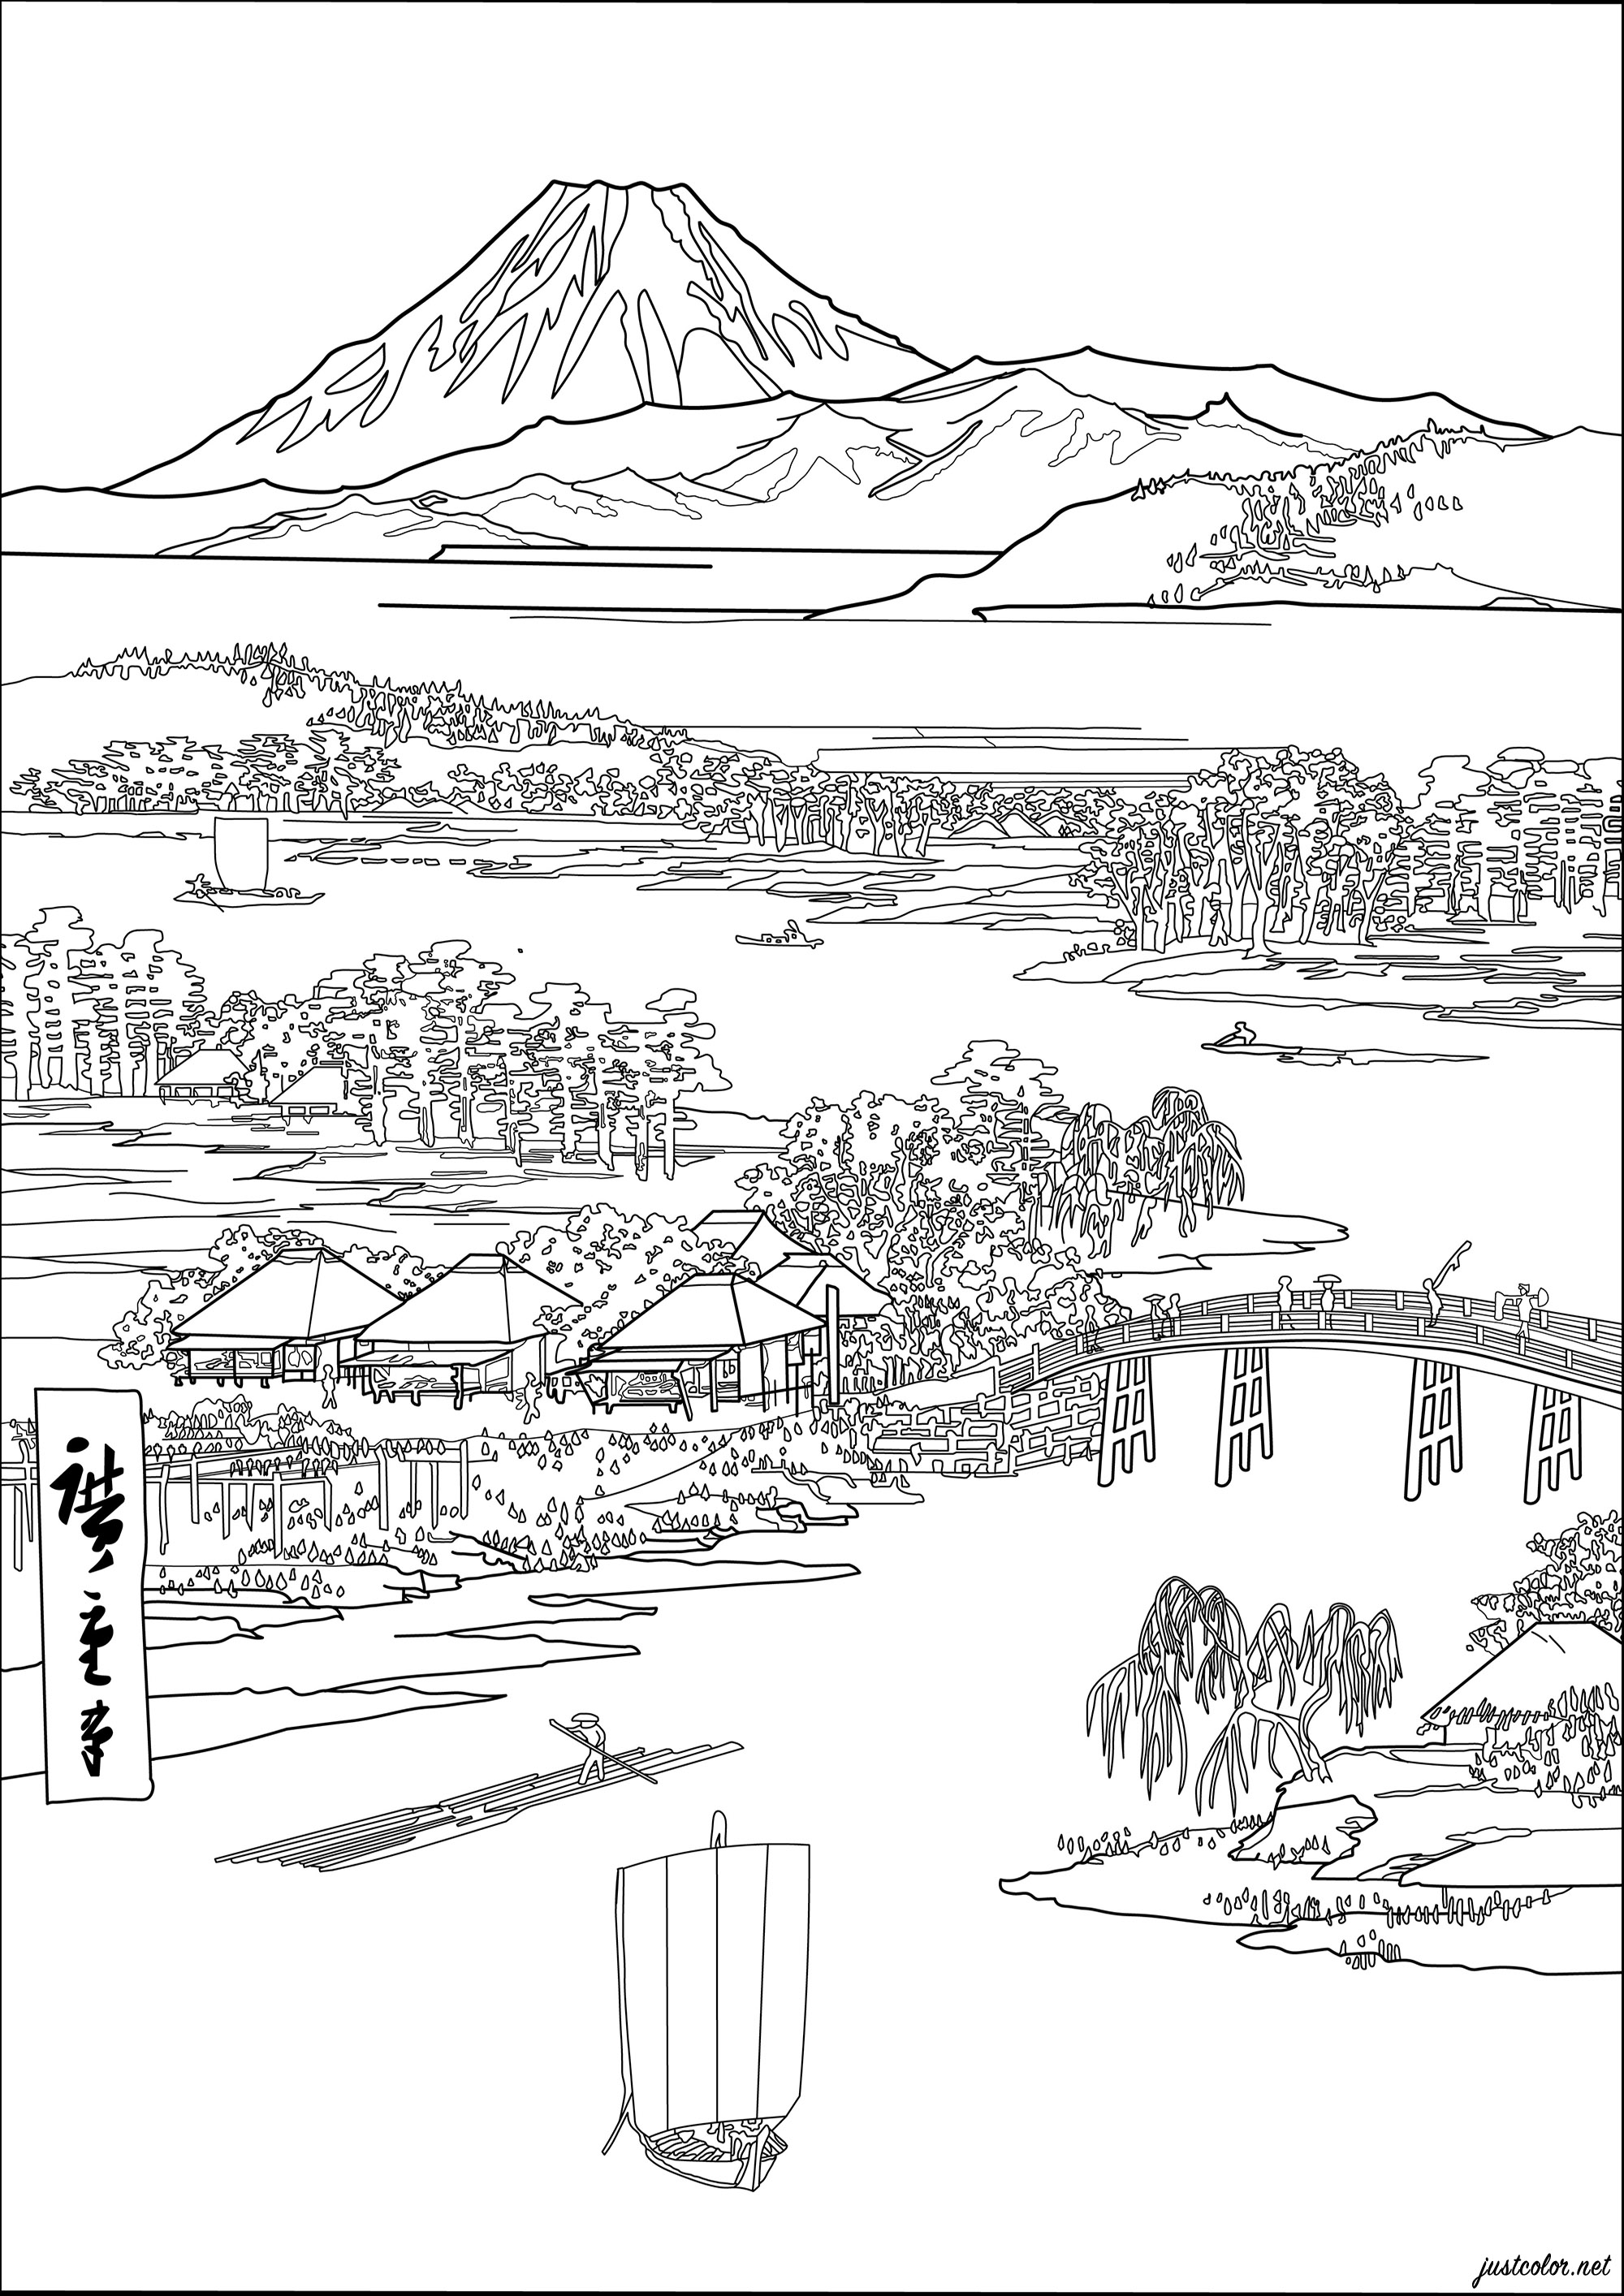 Coloração baseada numa gravura japonesa de Utagawa Hiroshige (1833). Esta japonesa representa uma cena japonesa clássica, com casas de estilo tradicional e montanhas ao fundo.As cores originais são suaves e pastel, com tons de azul, verde e cor-de-rosa, Artista : Morgan